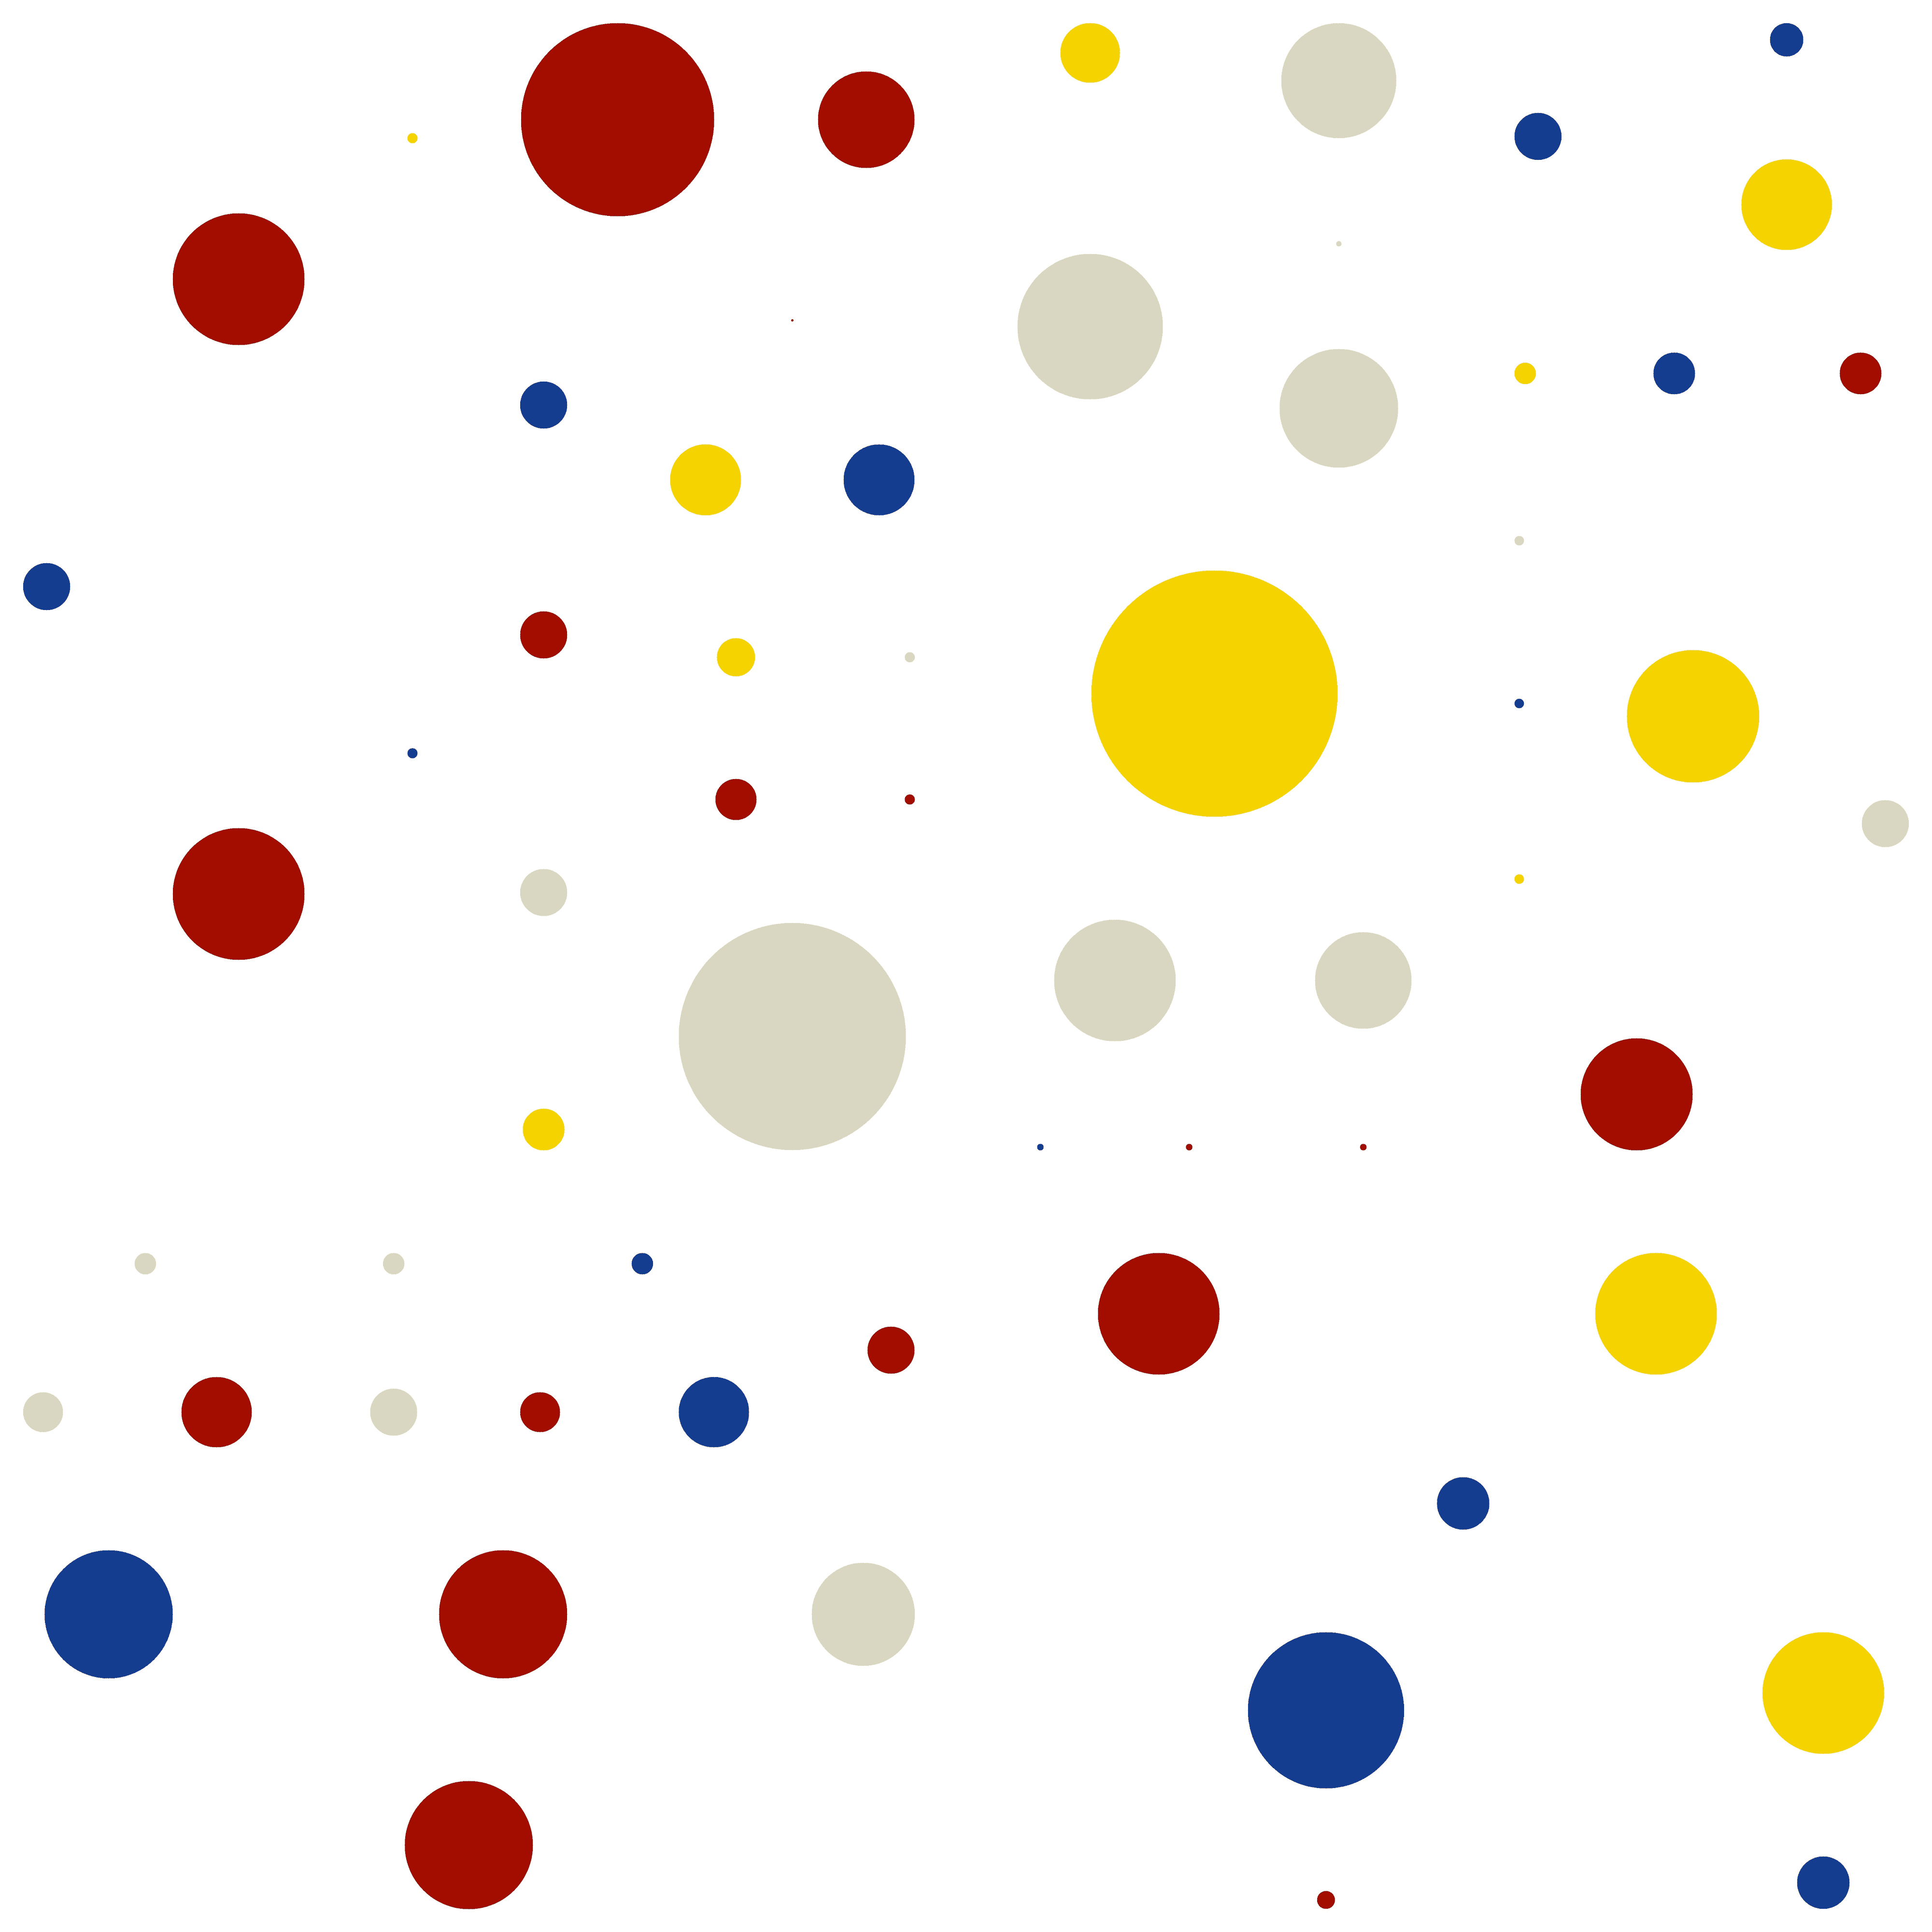 'Number 62' - Circles - MooniTooki Project - Abstract NFT Art @ 6480 x 6480 pixels.